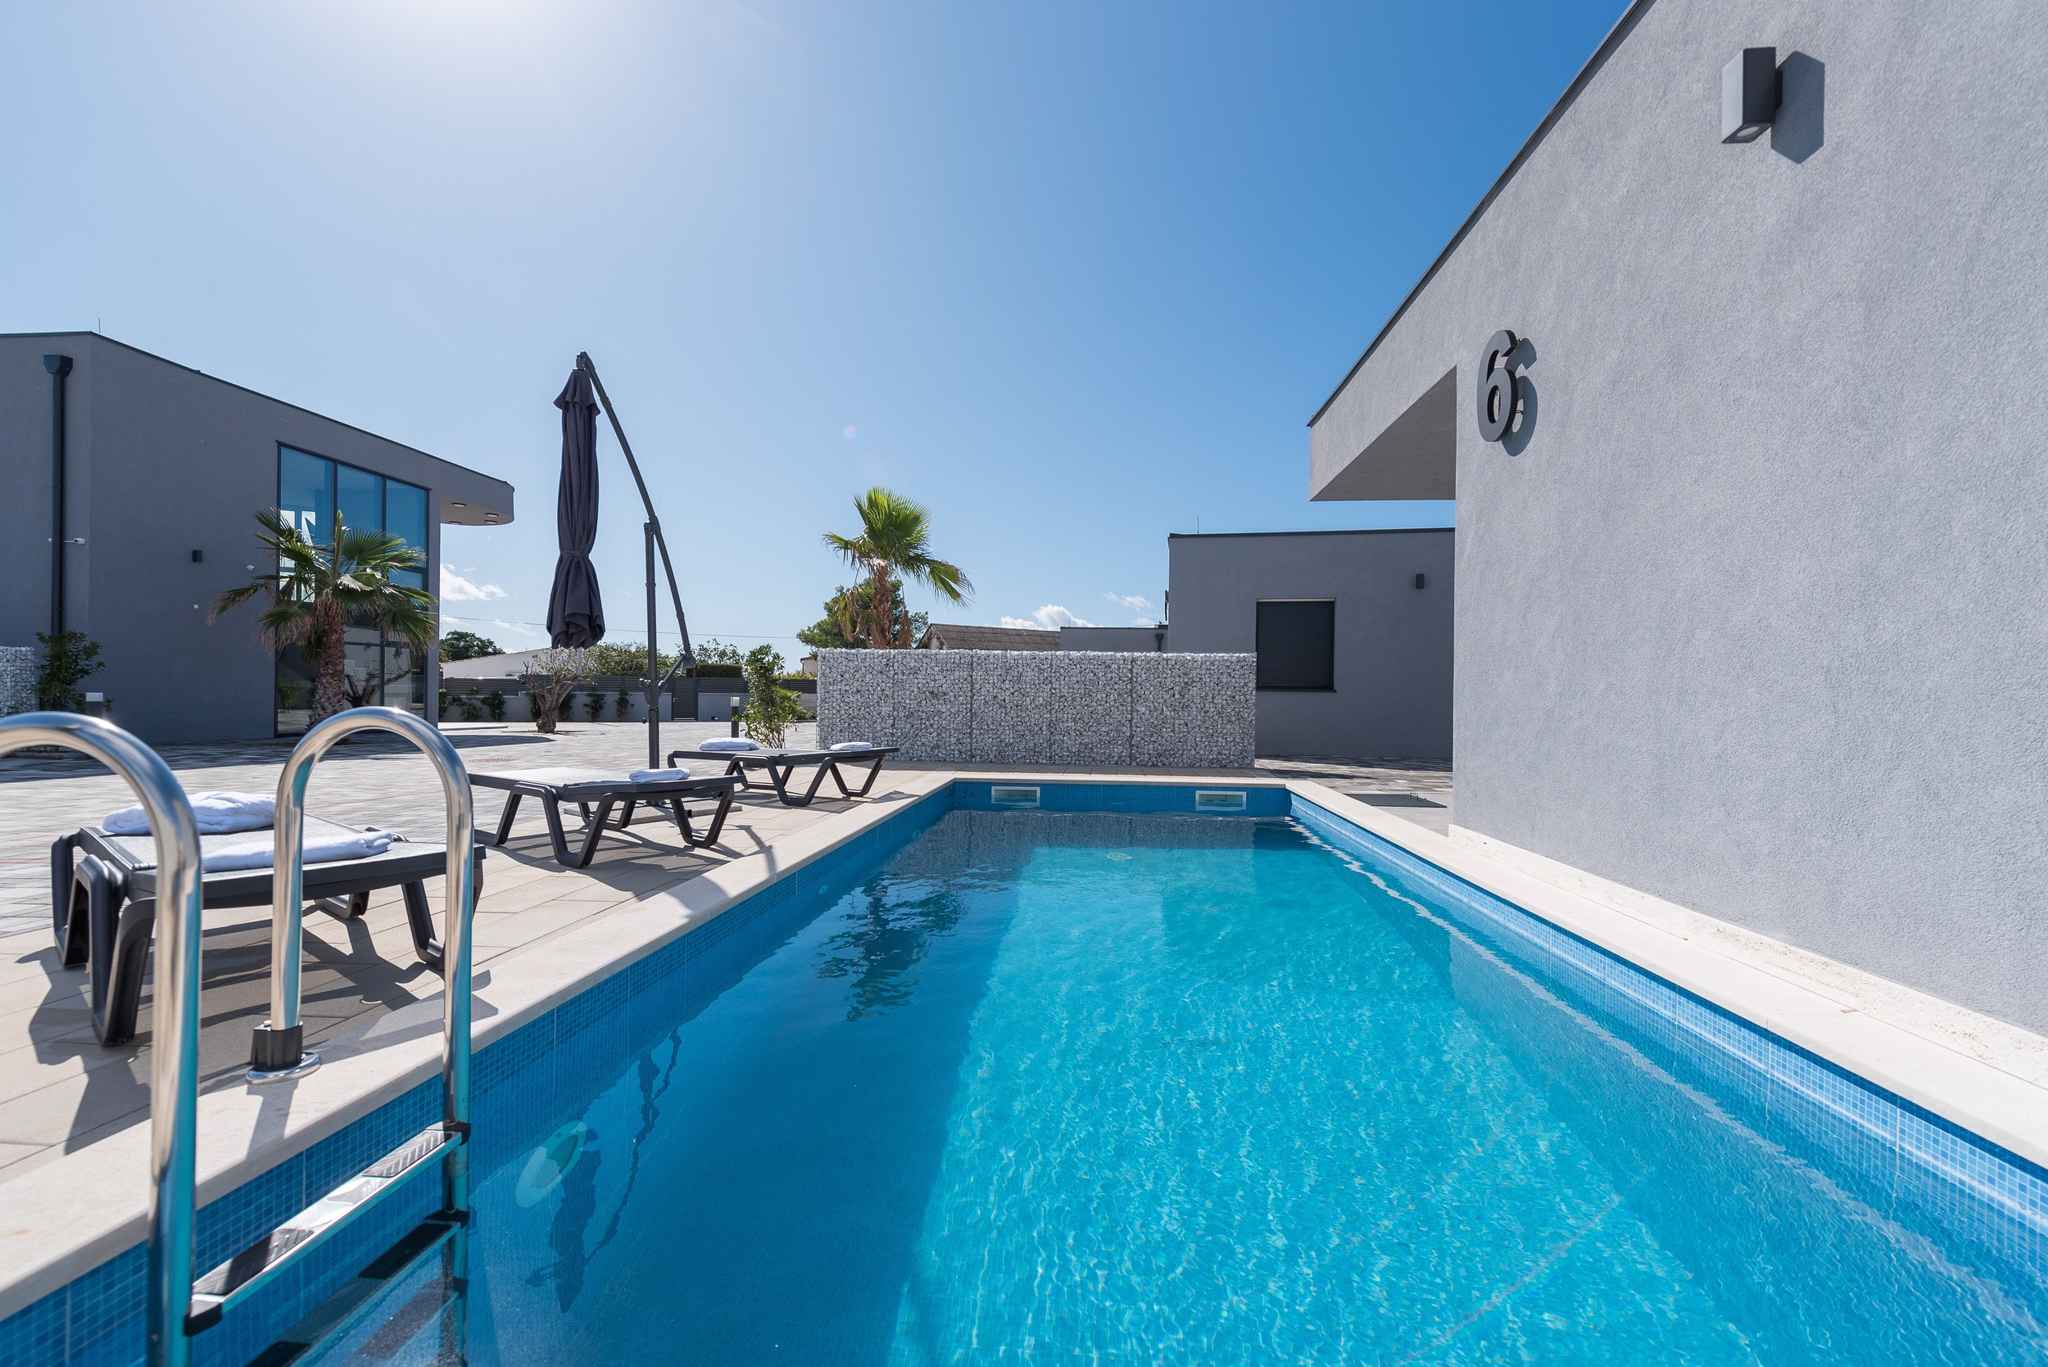 Villa mit Pool für 4-6 Personen im Luxusresor Ferienhaus in Kroatien